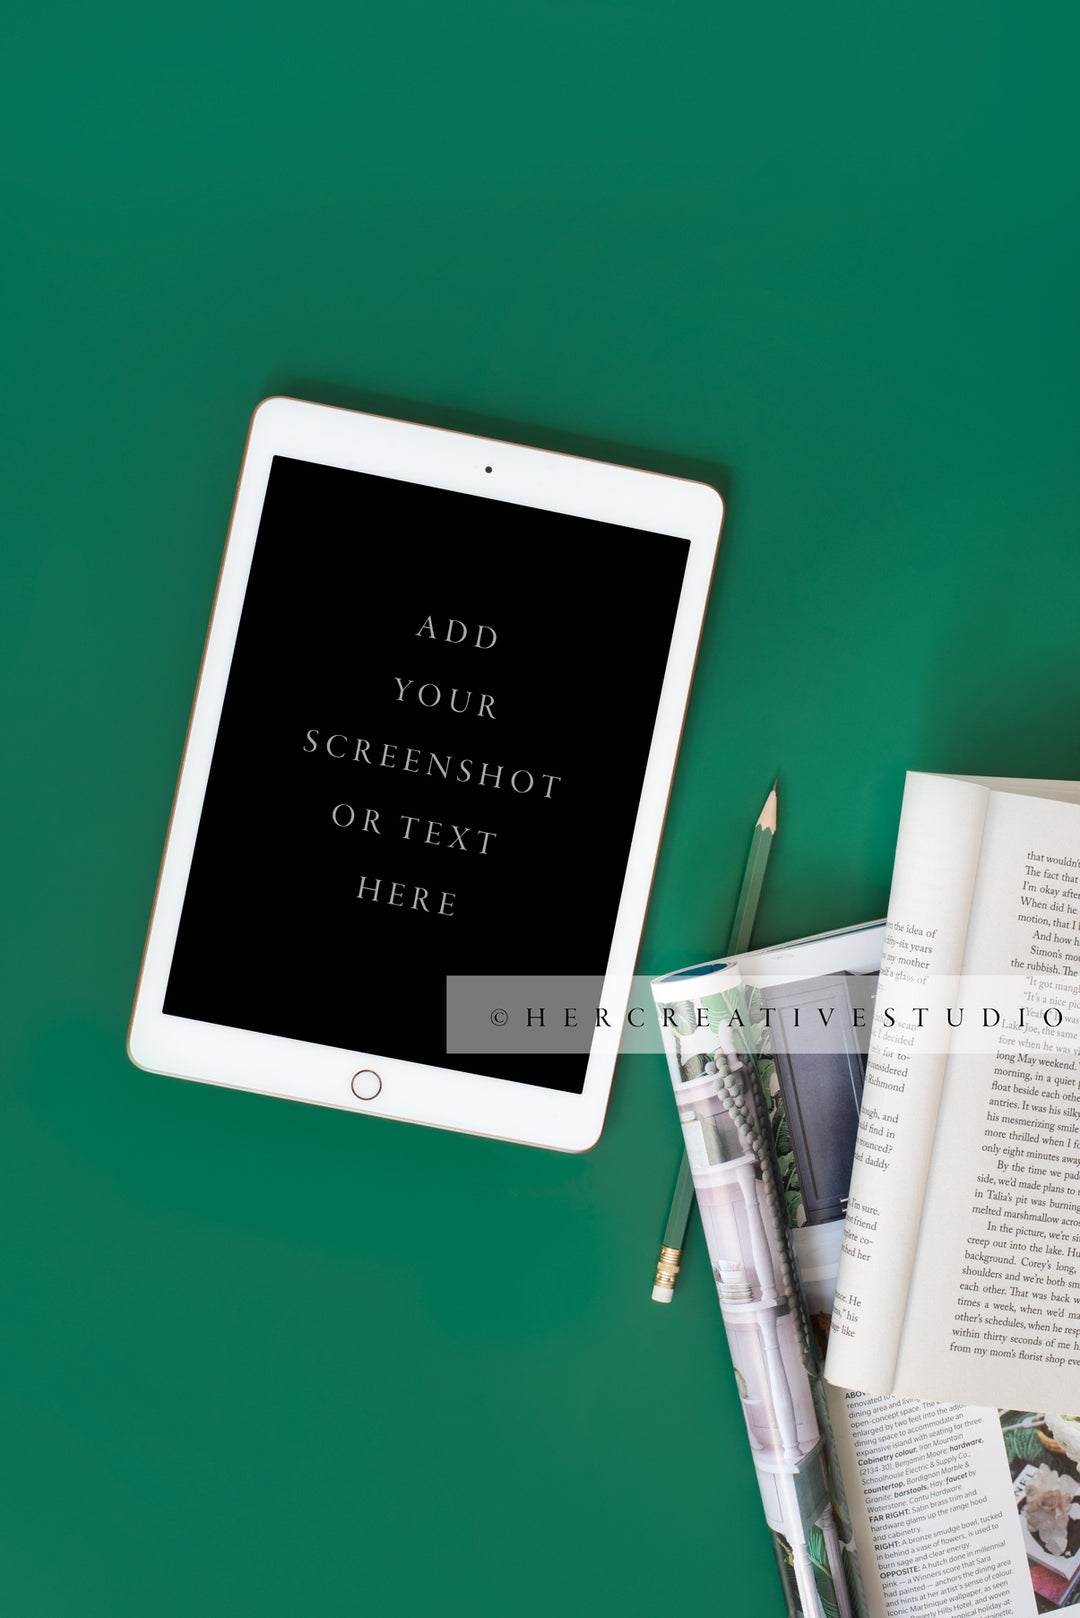 Book & Tablet on Green Background. Digital Image